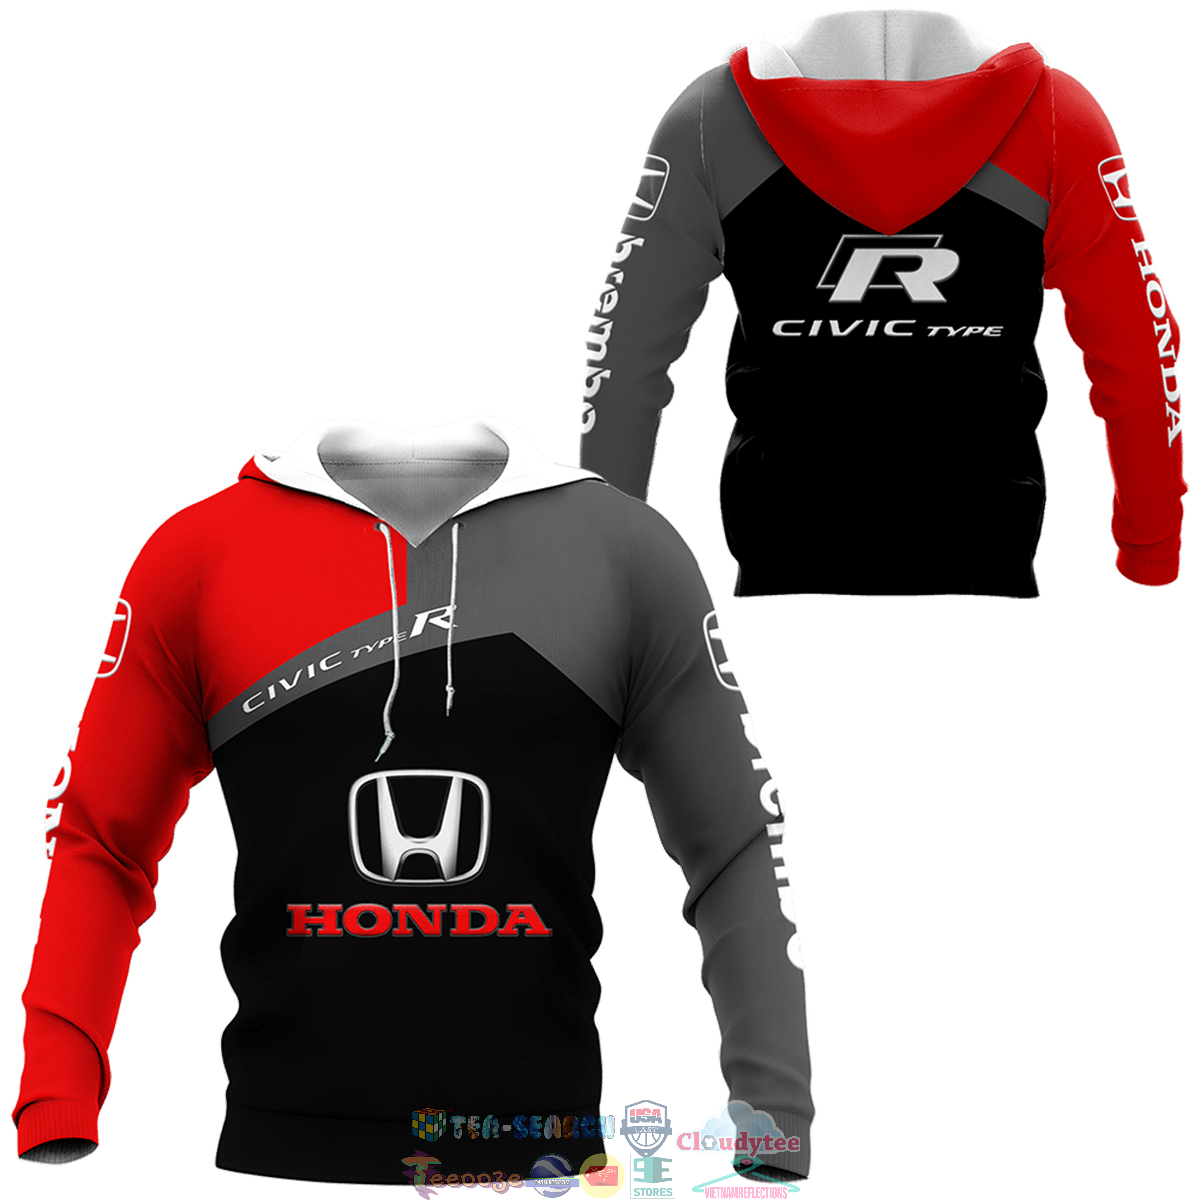 t114w6mQ-TH130822-25xxxHonda-Civic-Type-R-ver-3-3D-hoodie-and-t-shirt3.jpg